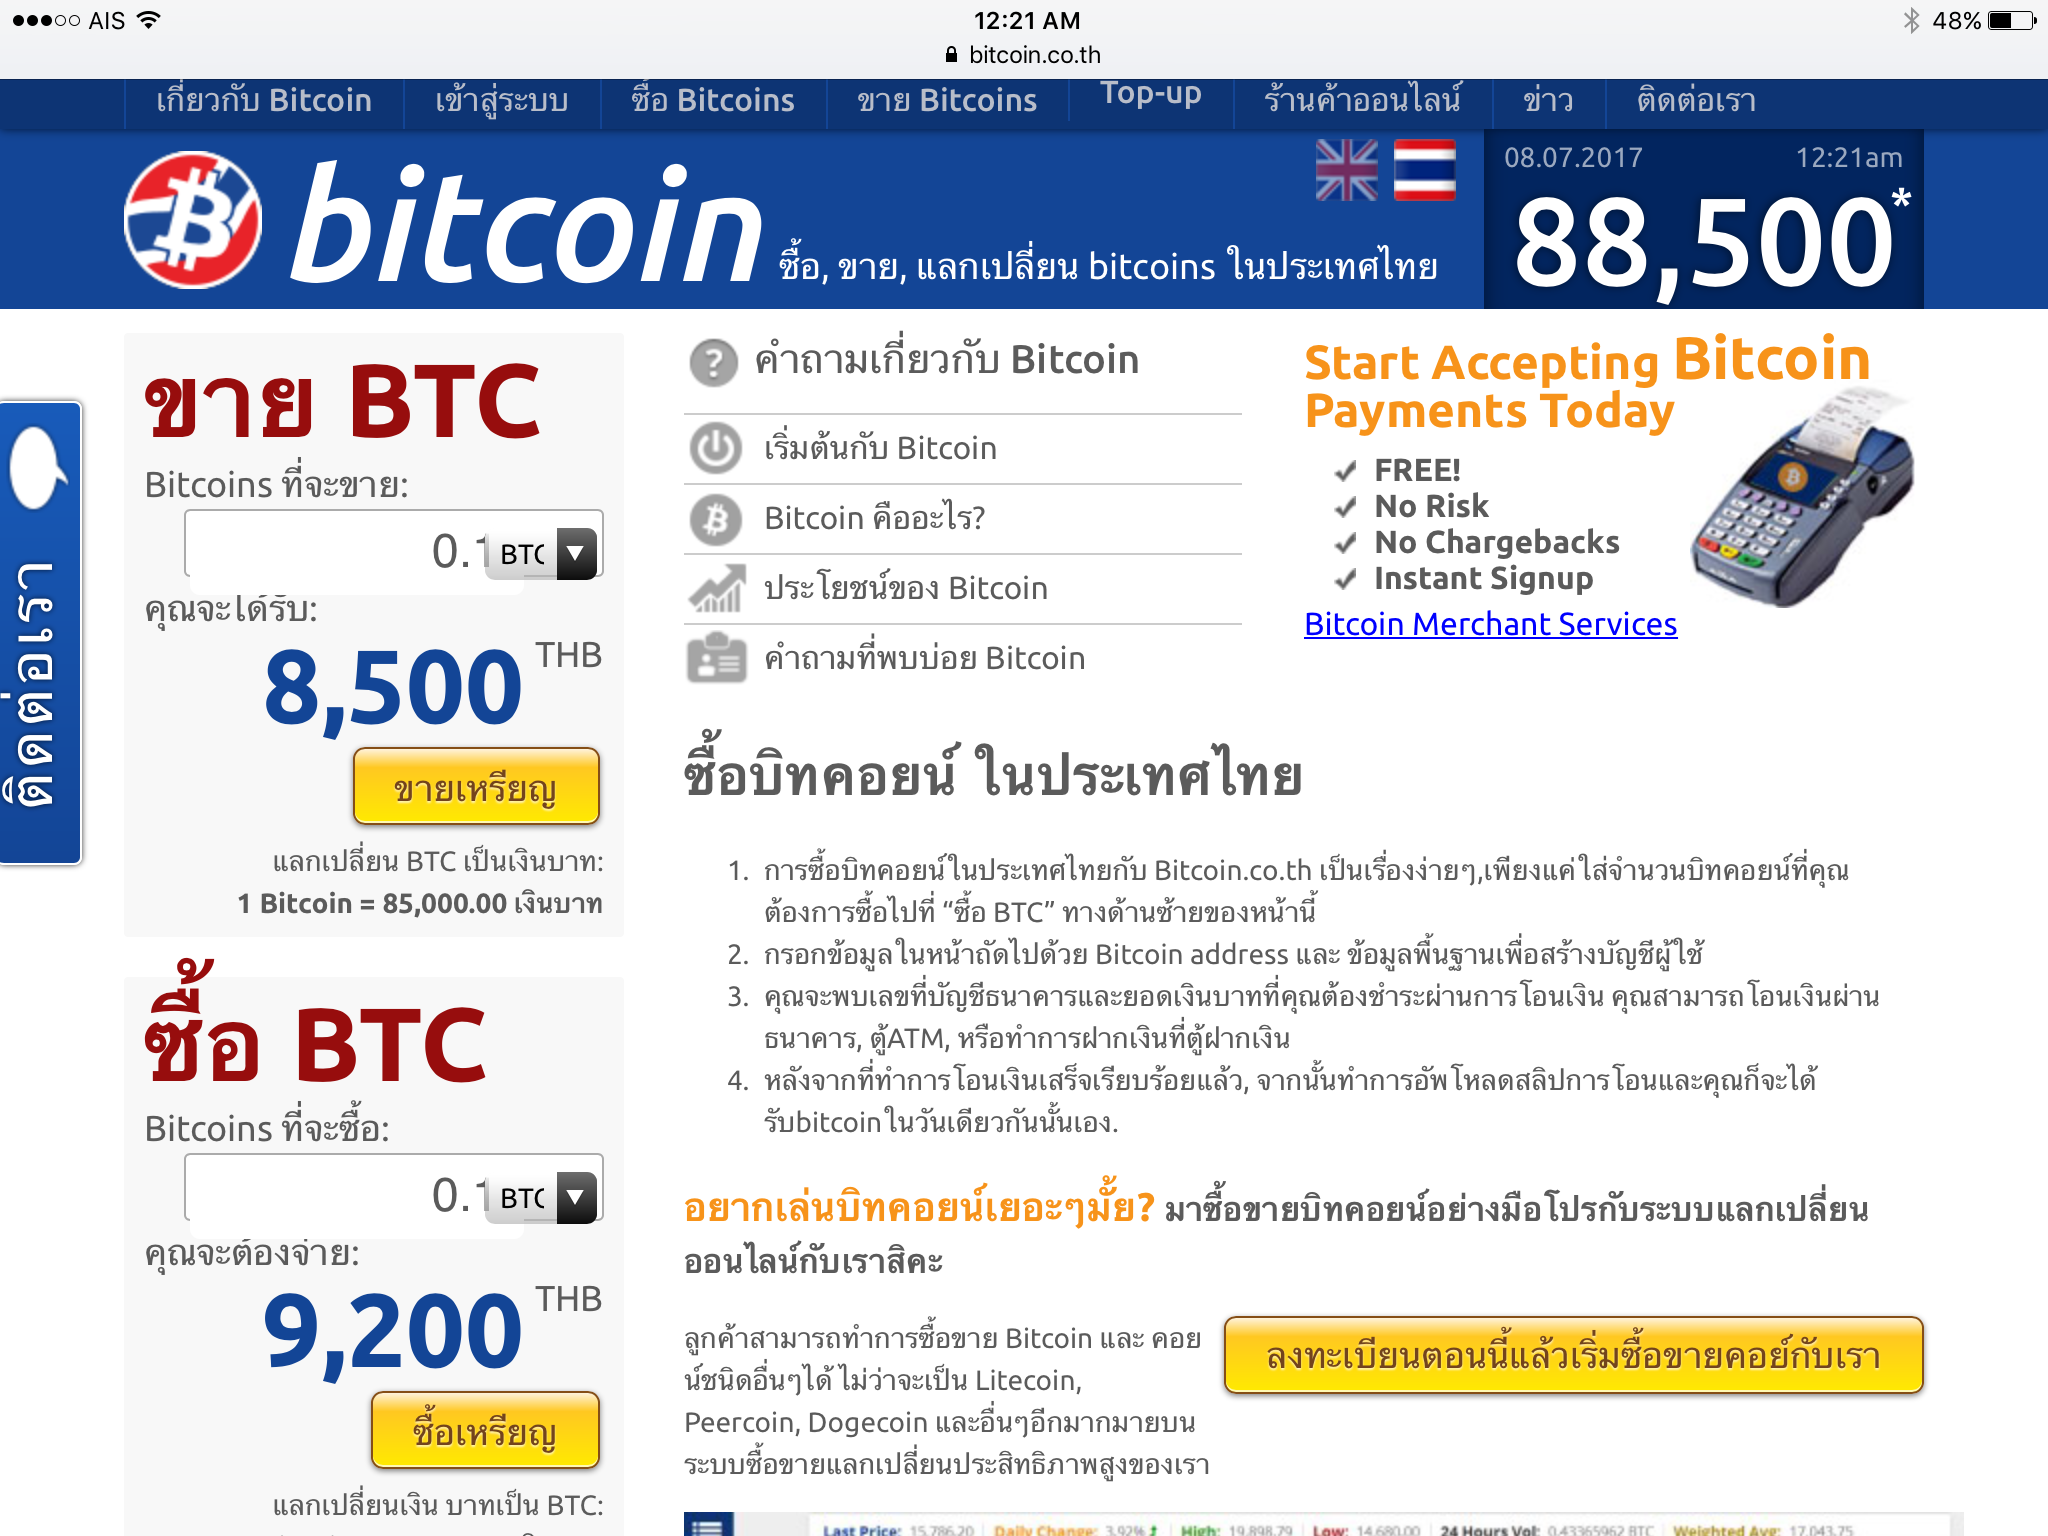 ปกติแล้วเค้าเปลี่ยนเงิน Bitcoin เป็นเงิน Thai Baht  ผ่านช่องทางไหนกันบ้างครับ - Pantip